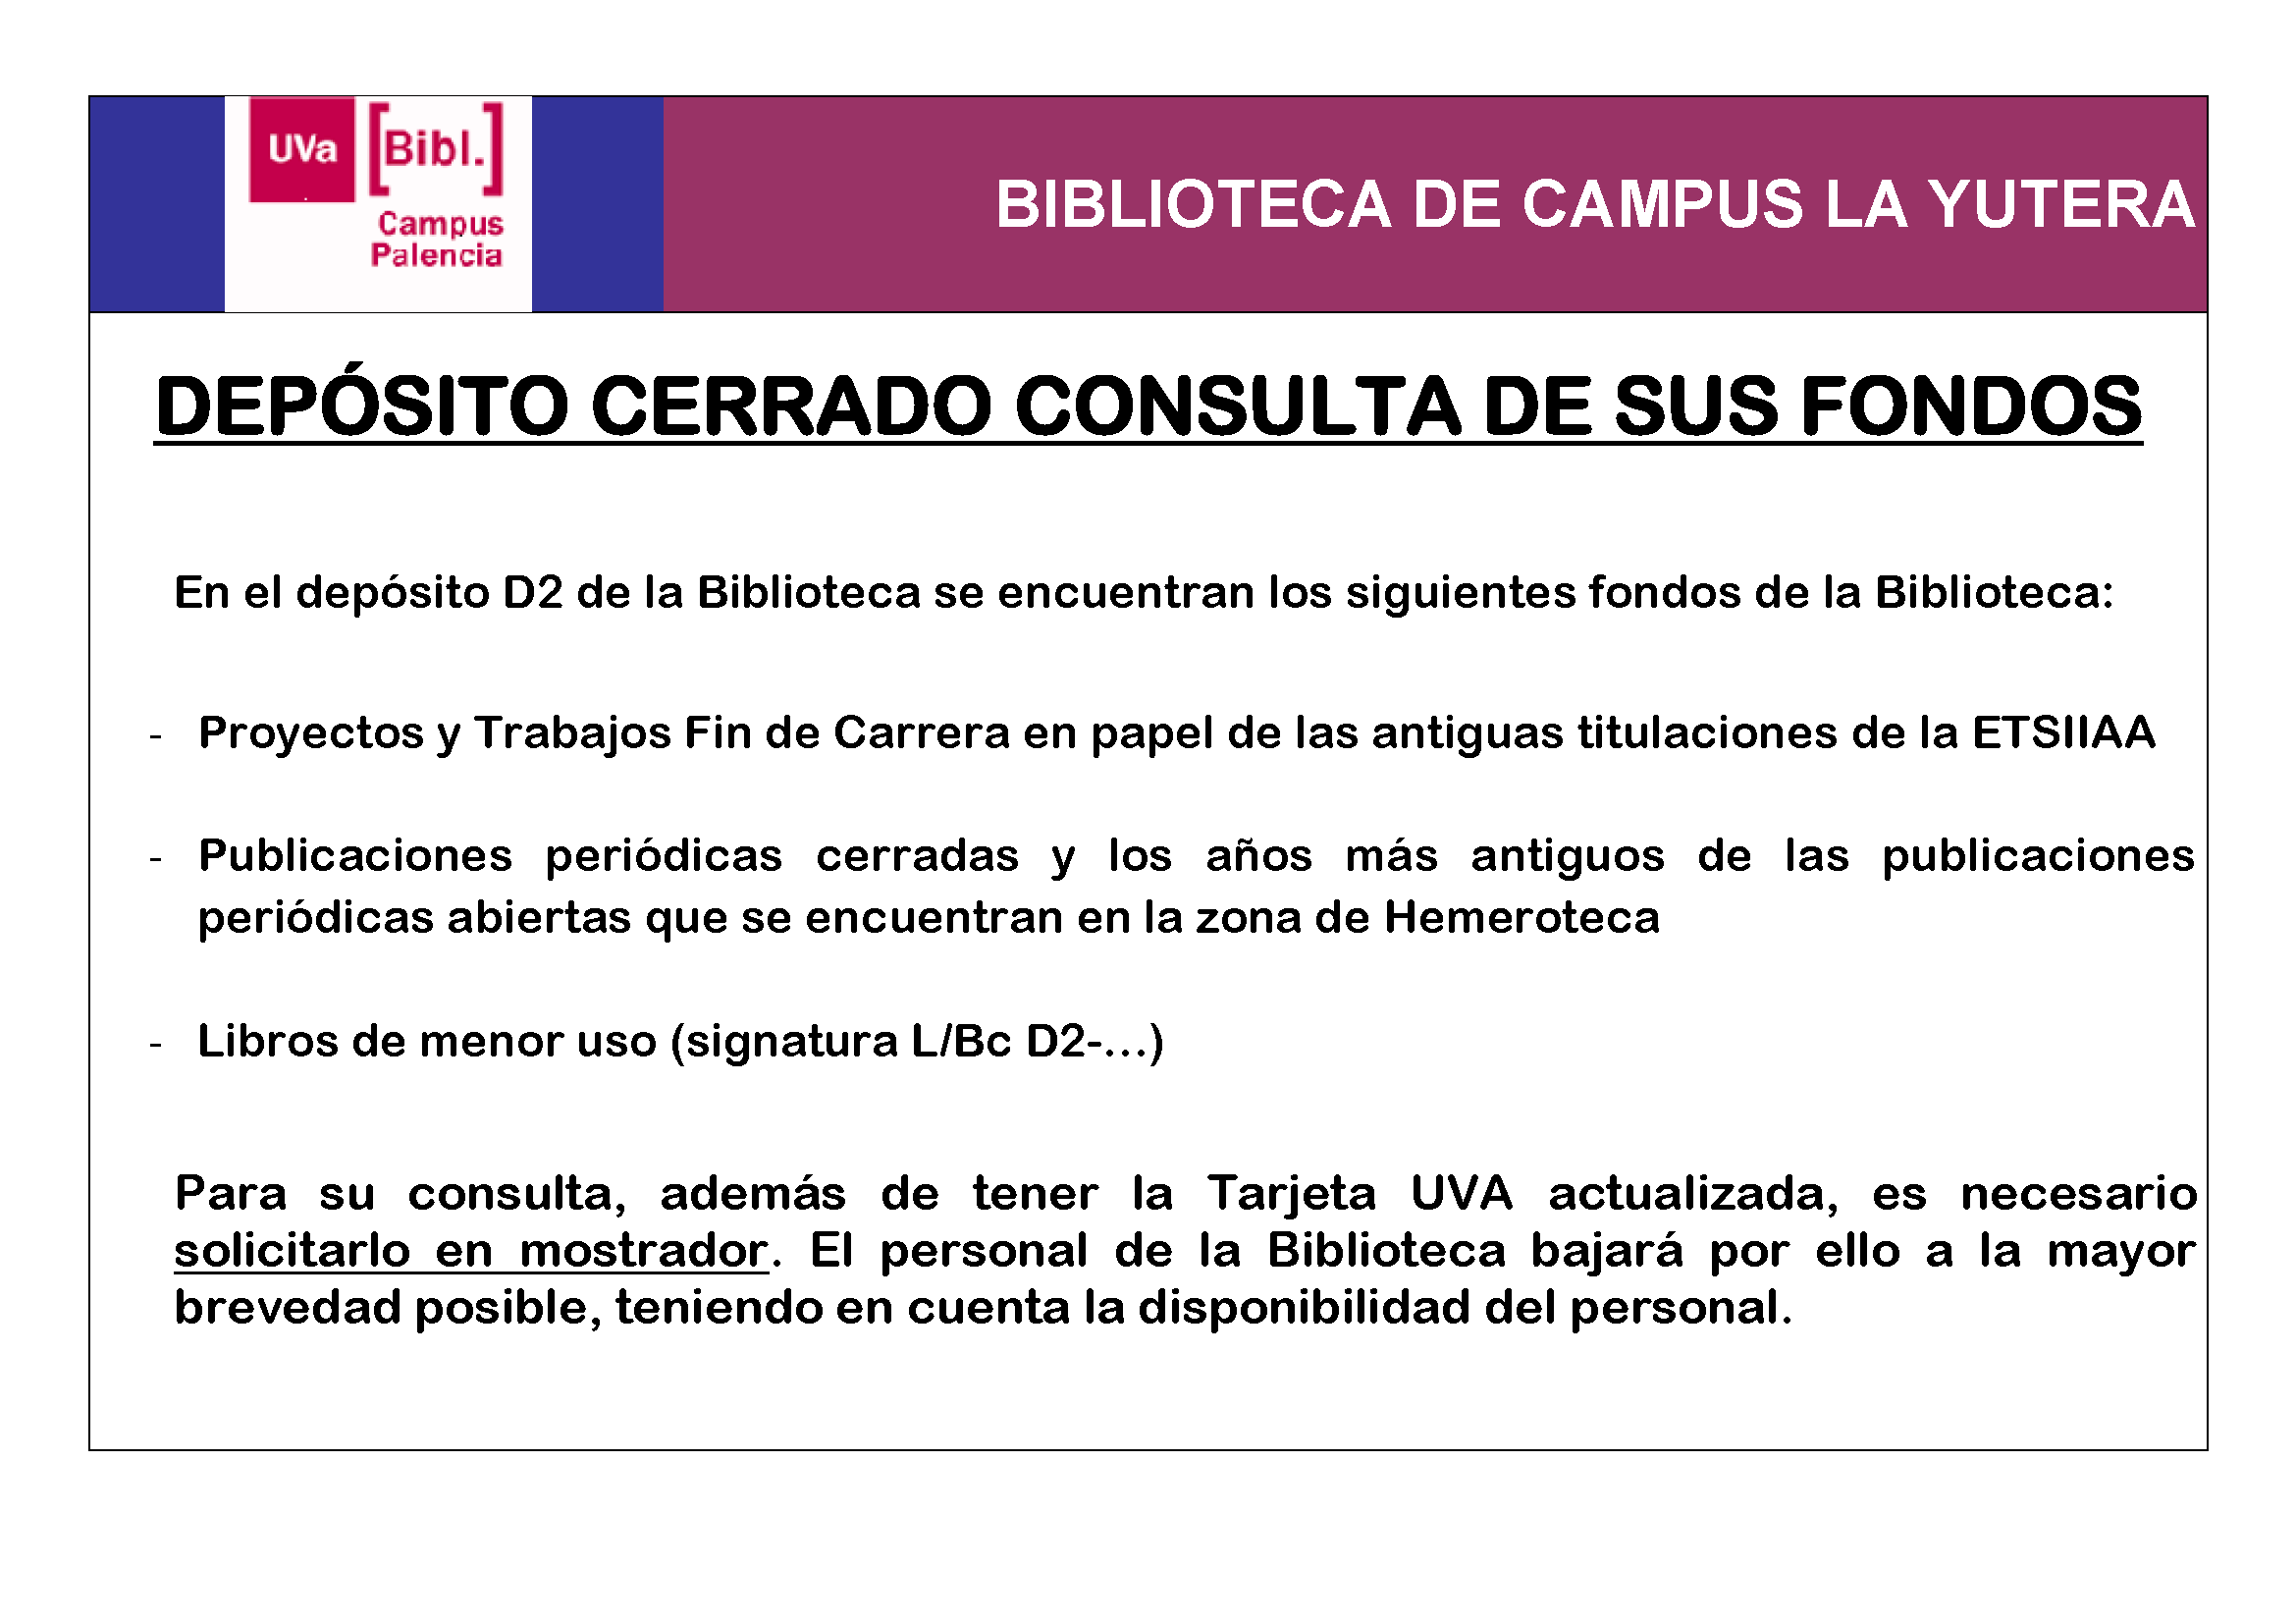 CARTEL LIBROS DE DEPÓSITO CERRADO D2- 0000 CONSULTA DE SUS FONDOS 30-10-14